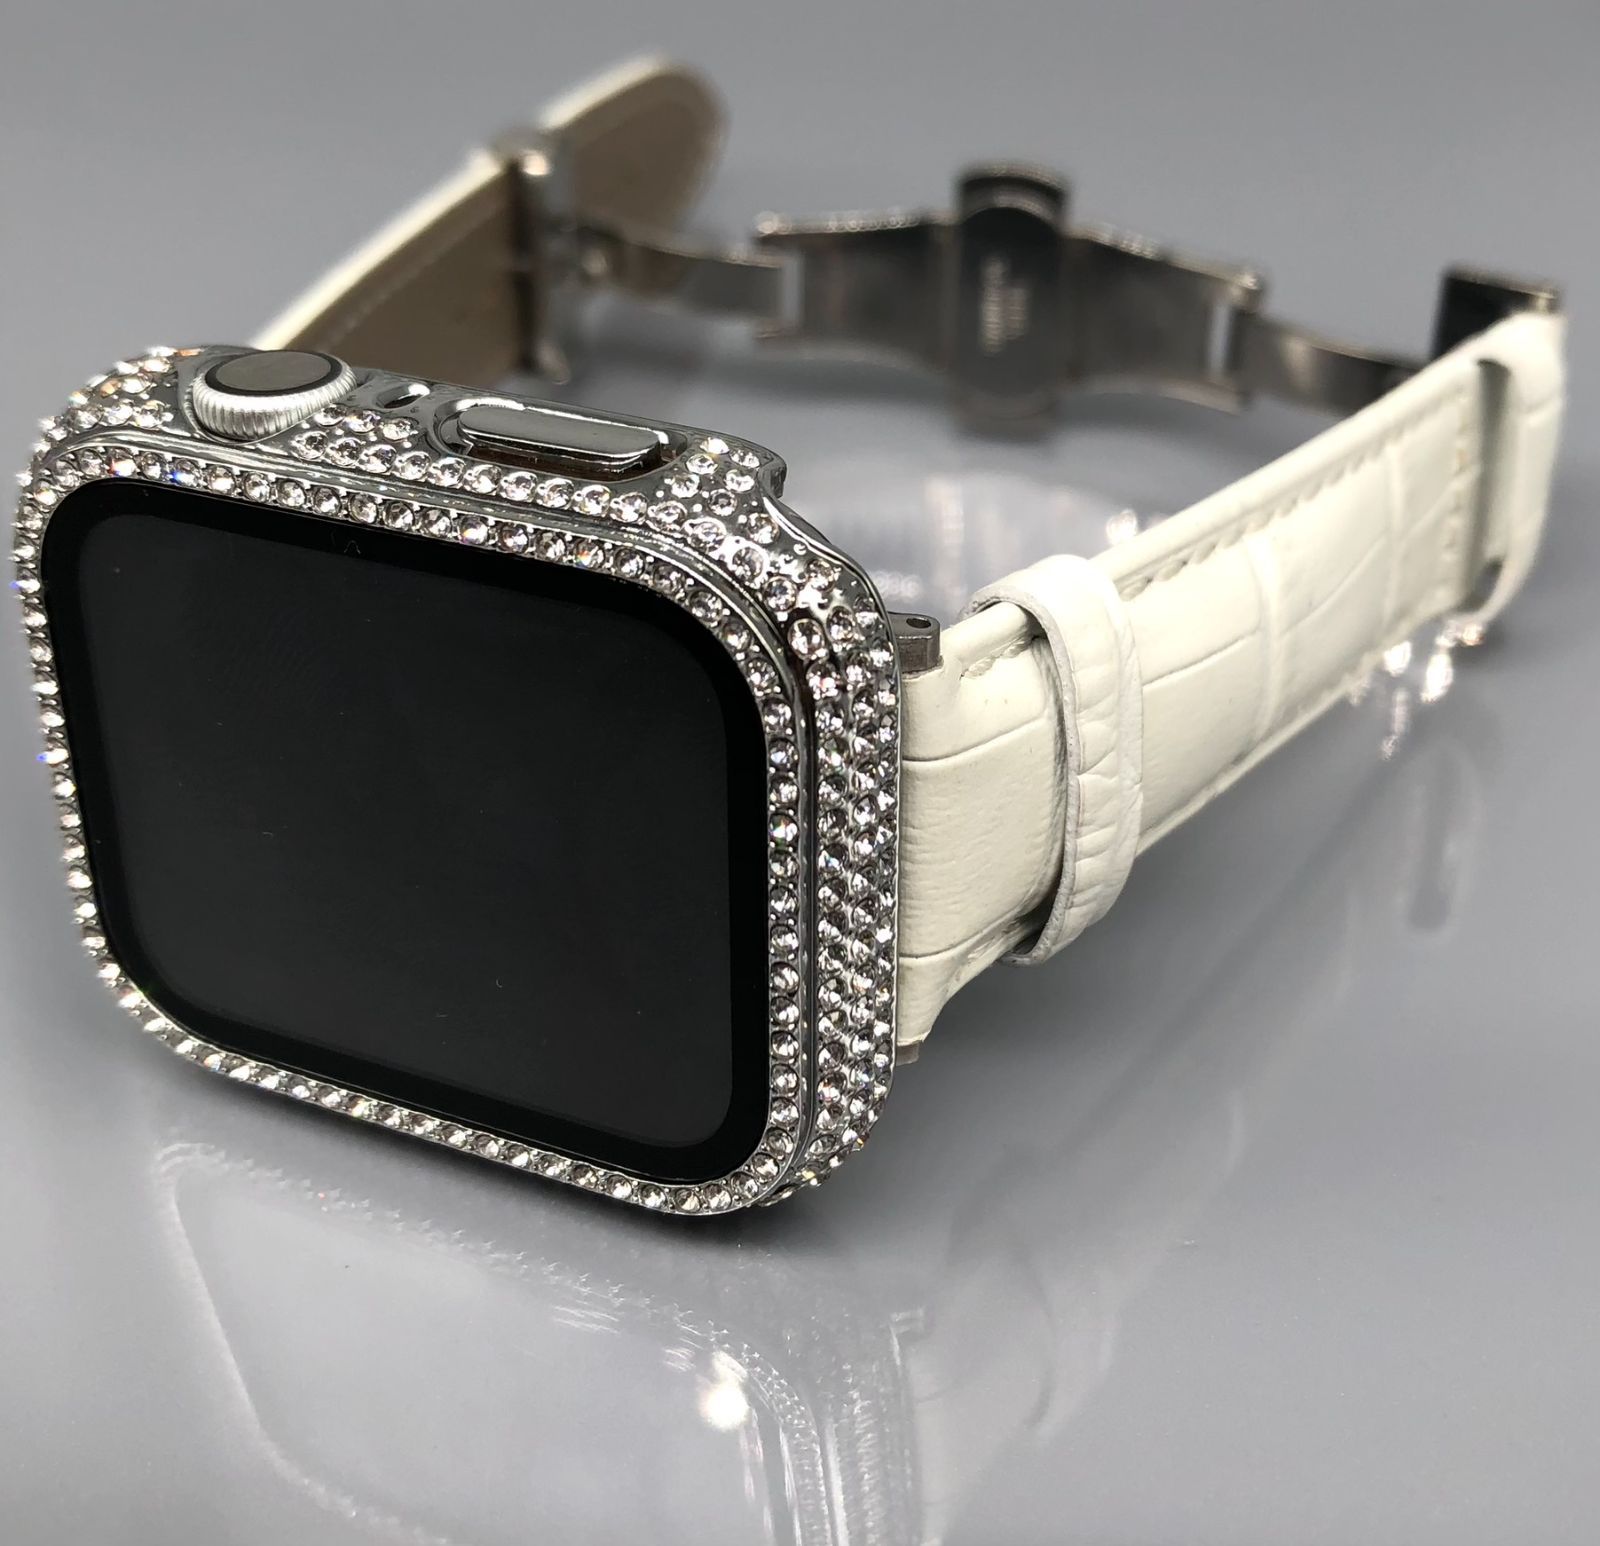 Apple Watch バンド 44mm ケースセット アップルウォッチ 白